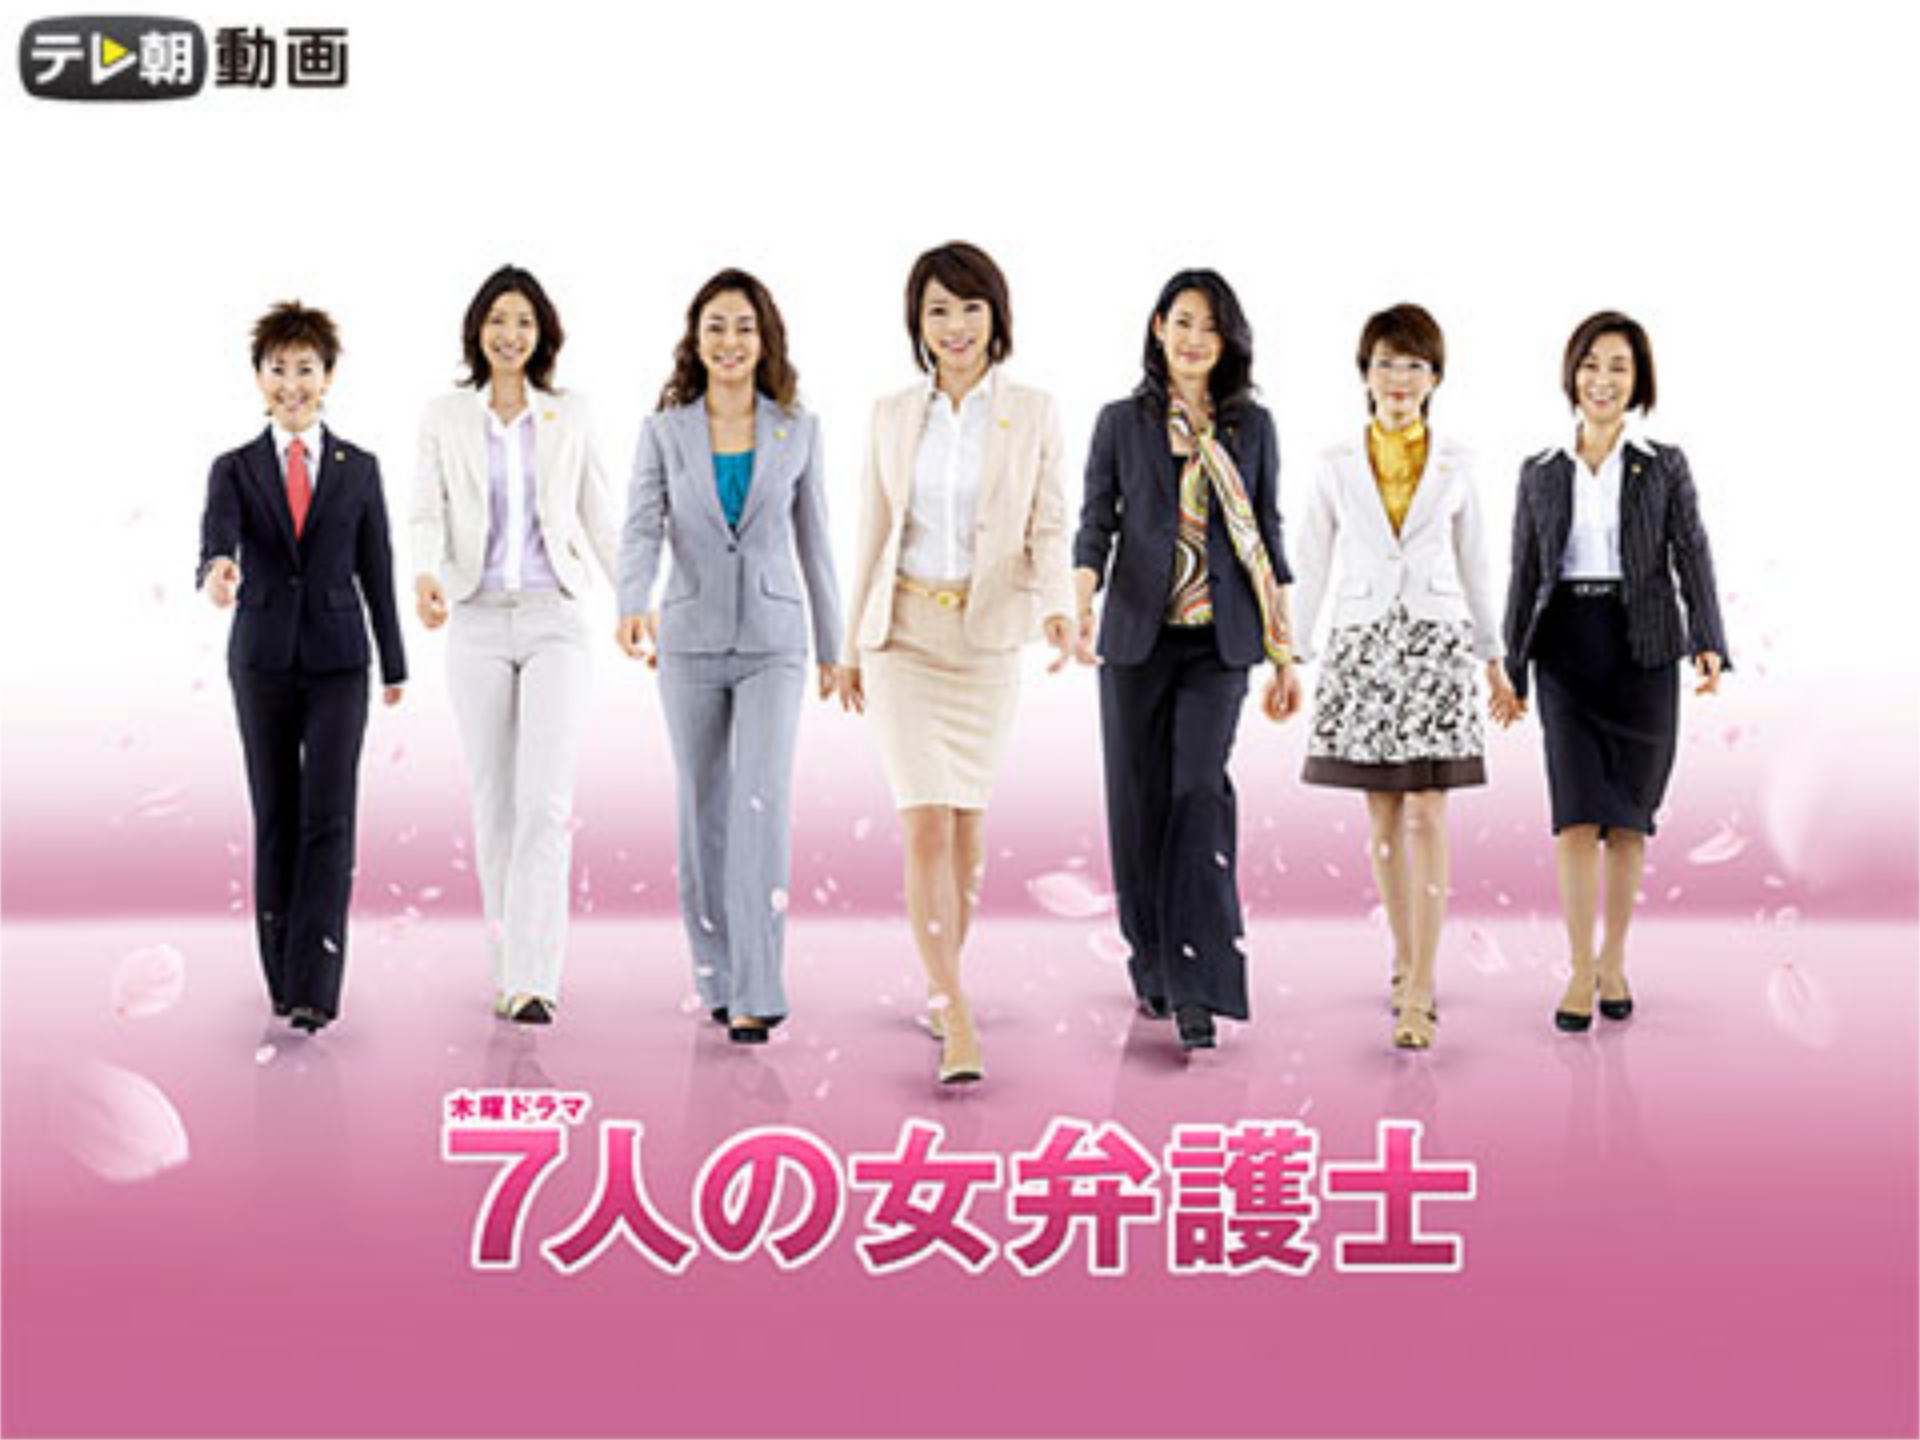 ドラマ 7人の女弁護士 08 の動画まとめ 初月無料 動画配信サービスのビデオマーケット